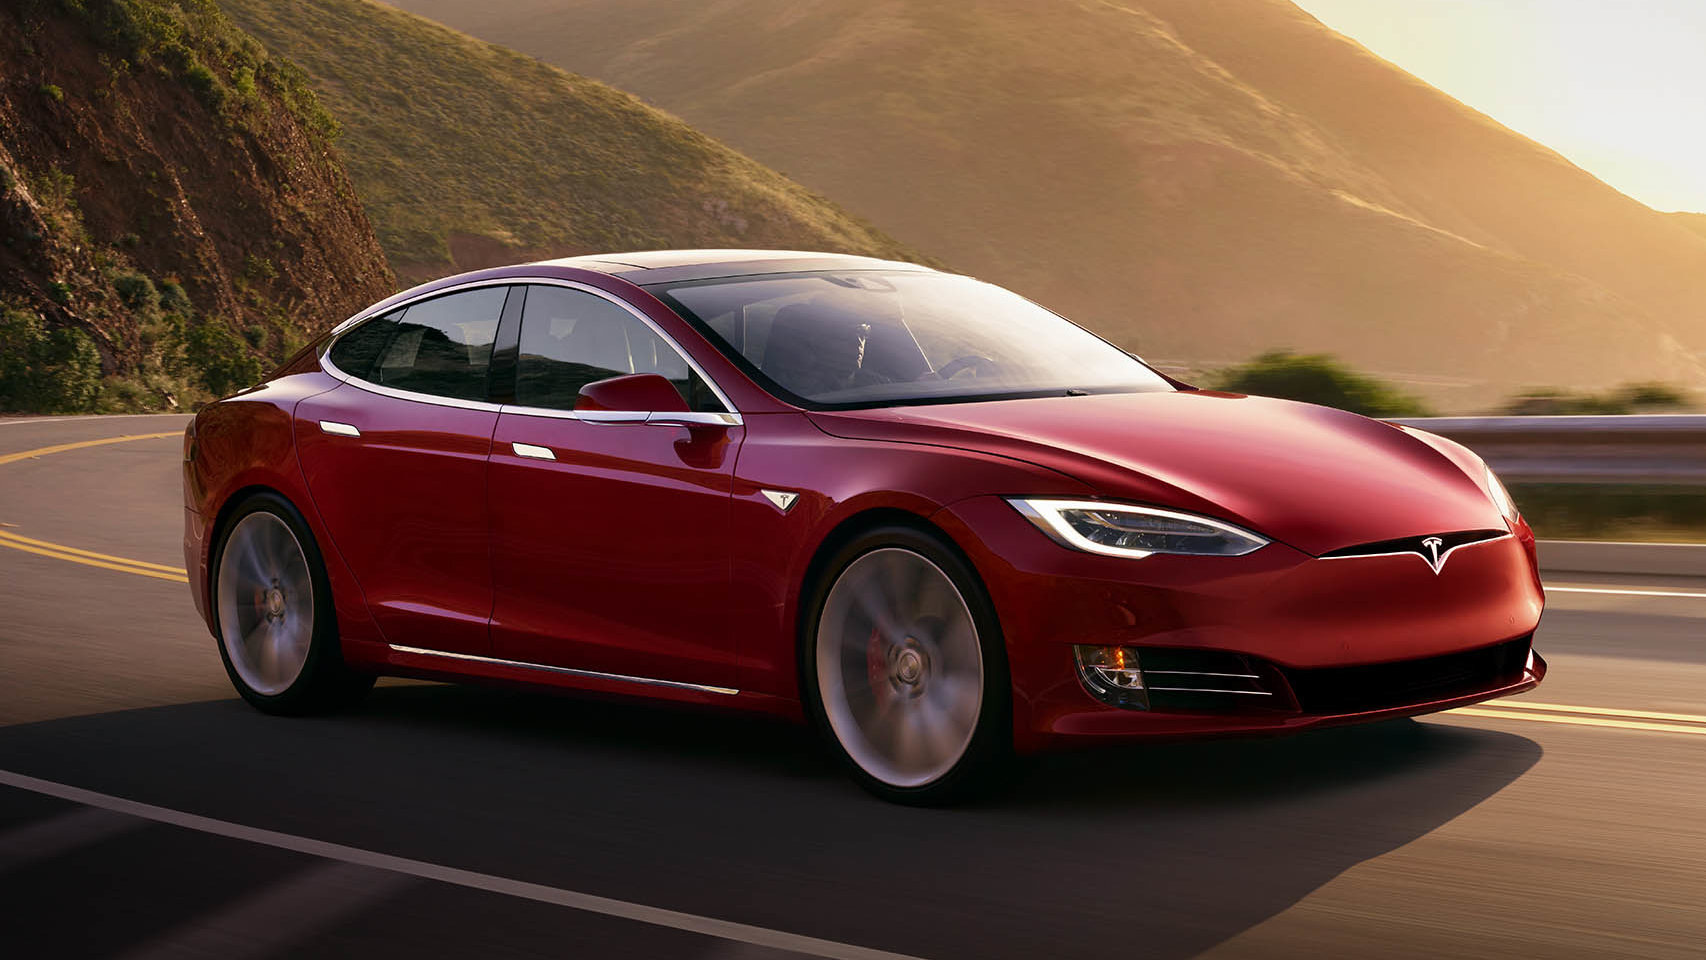 El Tesla Model S es el coche eléctrico con más autonomía, según la EPA